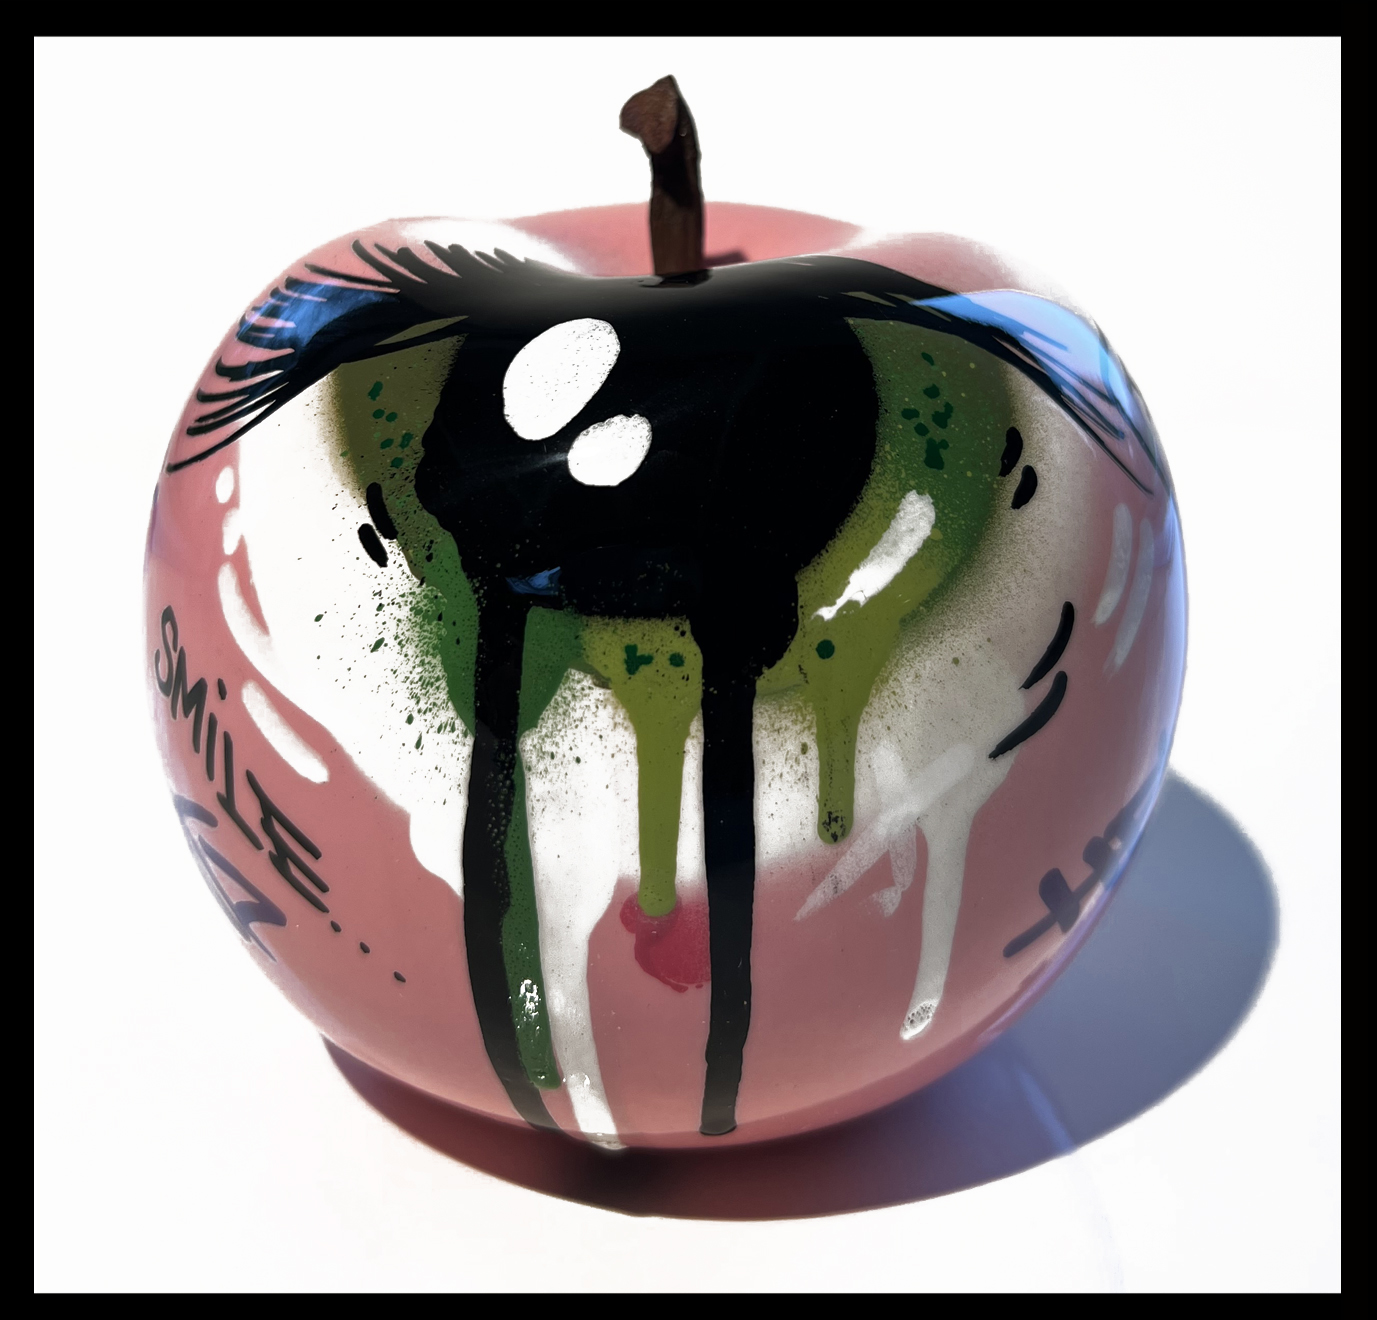 Apples “The Eye”